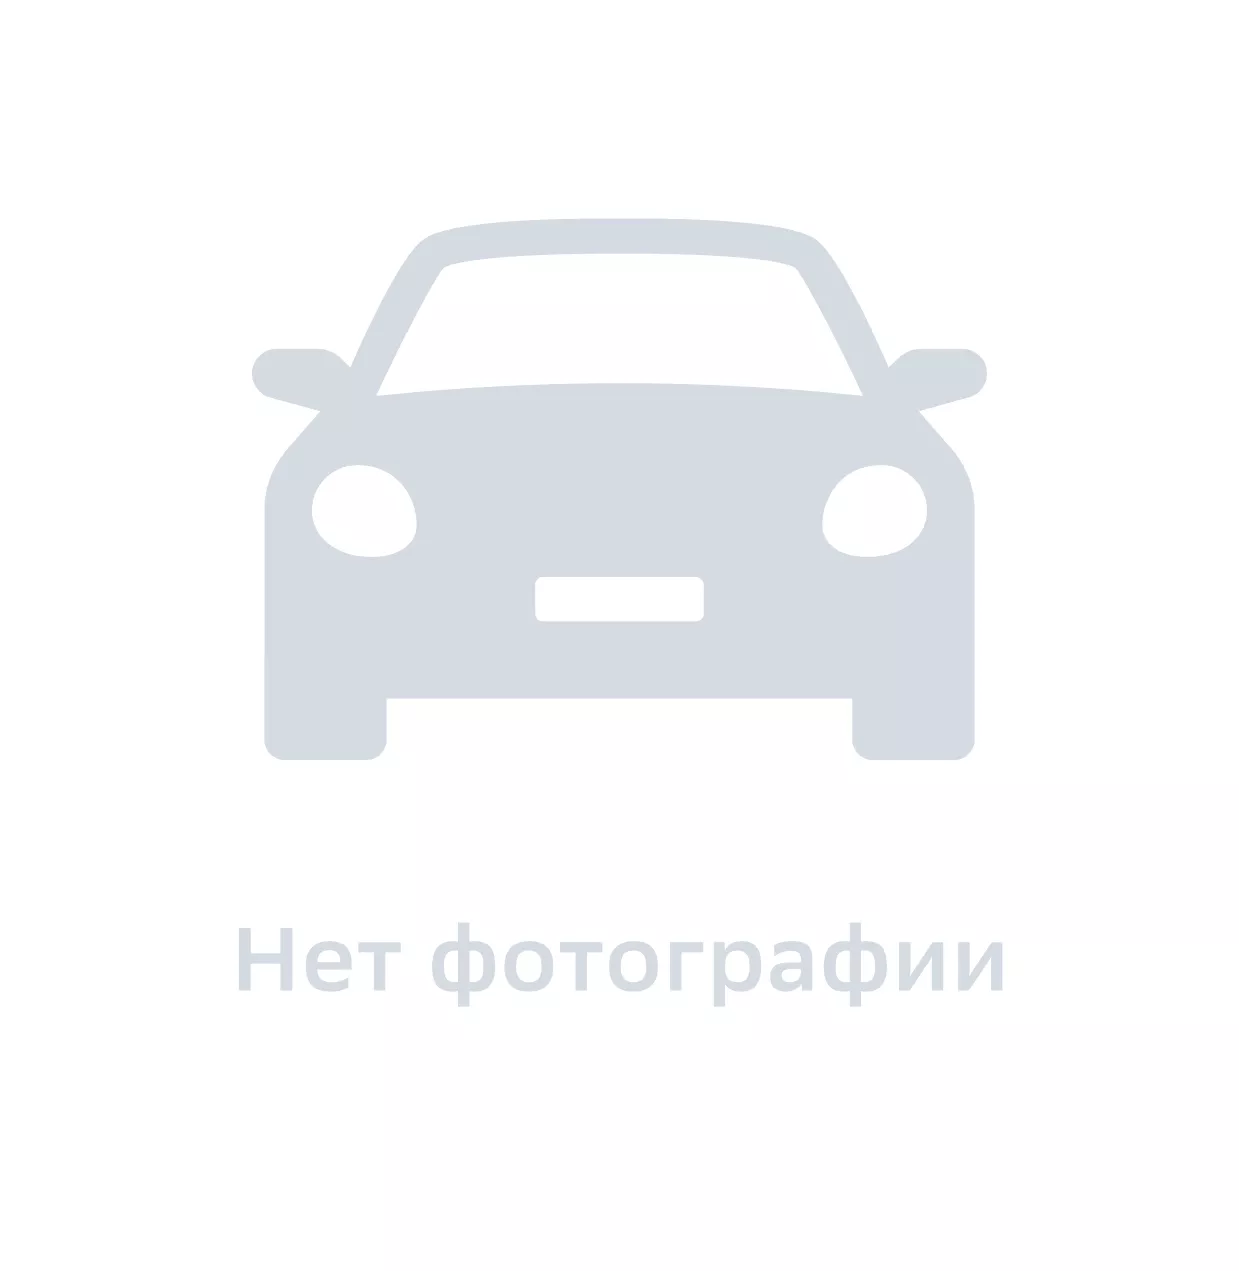 Тормозной суппорт, Ukor Auto, UCH9C853619, цена за 1 шт.